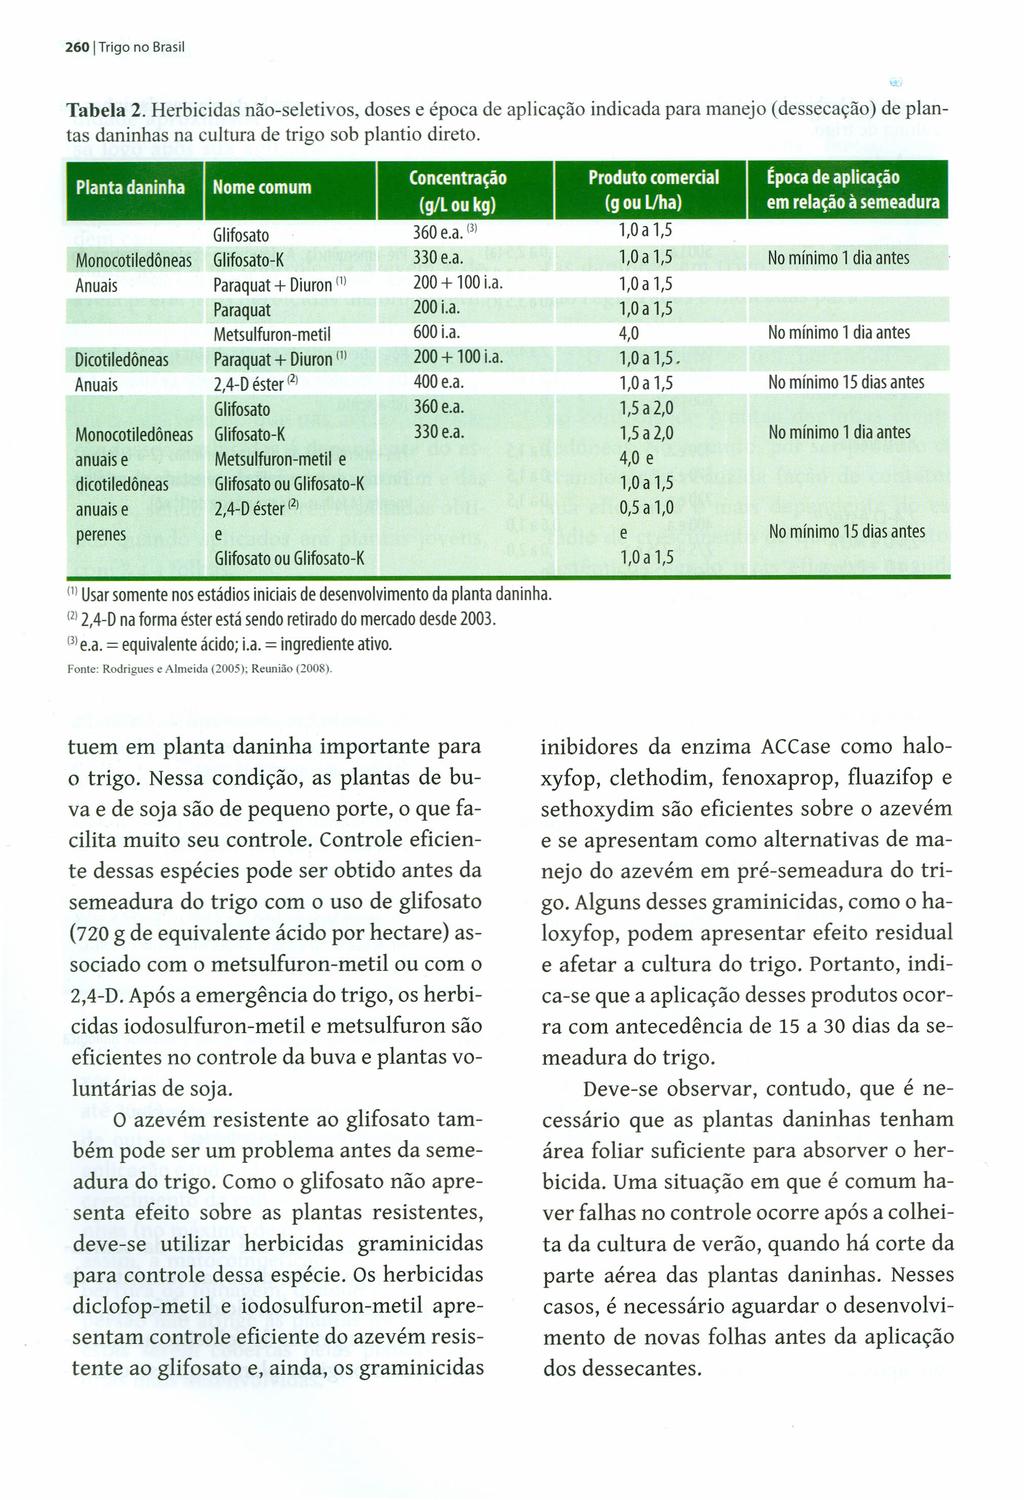 260 ITrigo no Brasil Tabela 2. Herbicidas não-seletivos, doses e época de aplicação indicada para manejo (dessecação) de plantas daninhas na cultura de trigo sob plantio direto.